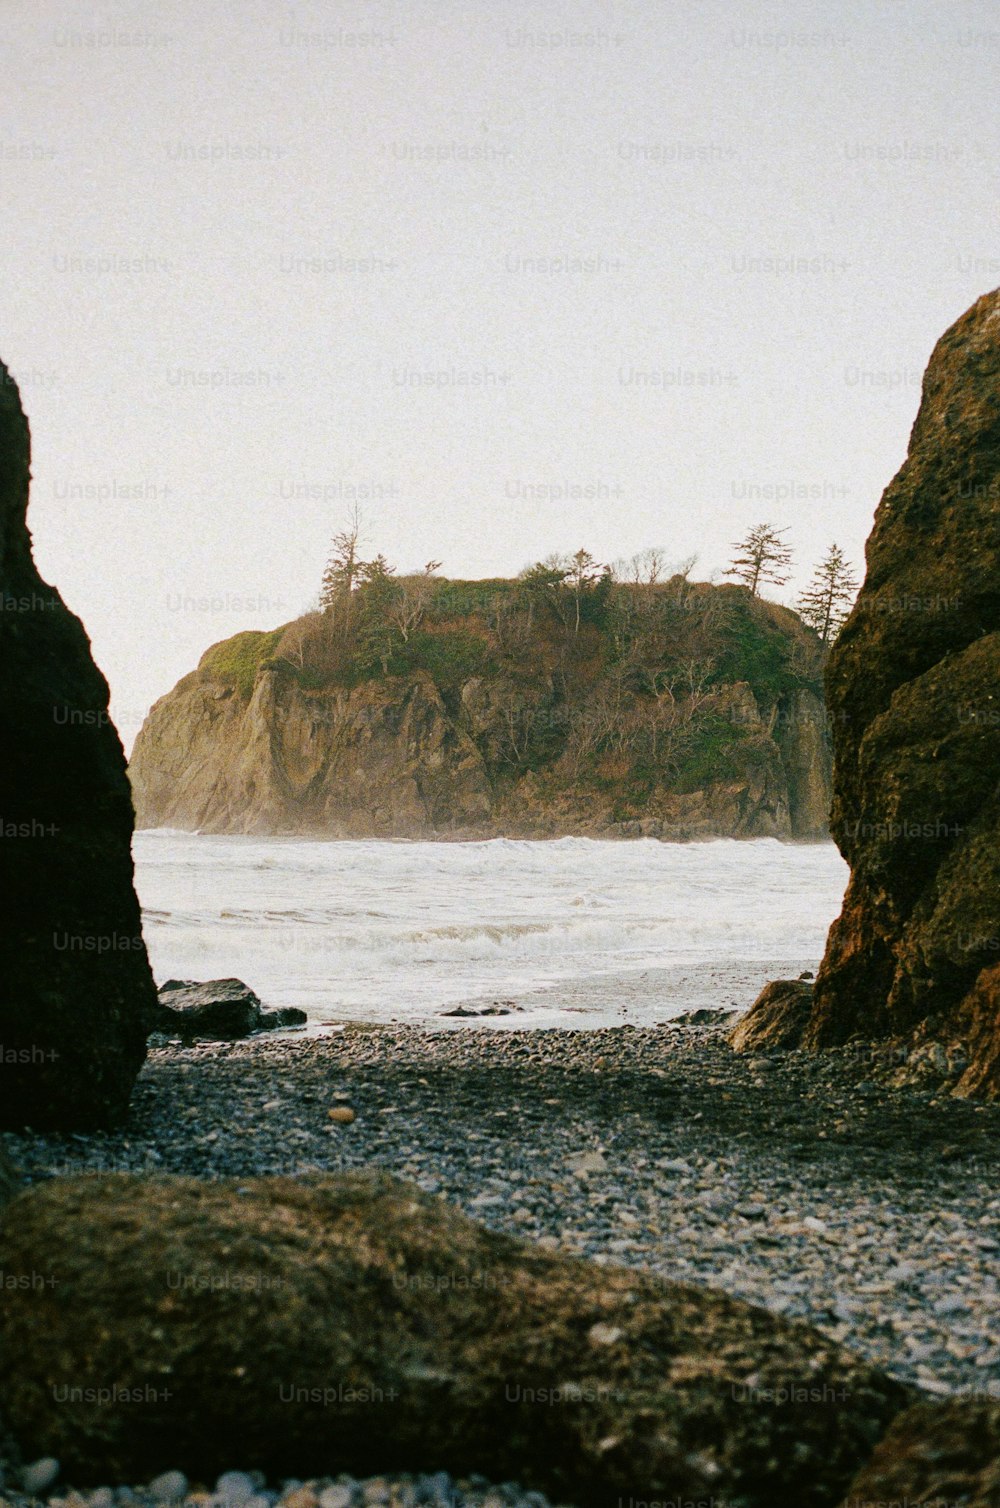 해변 꼭대기에 앉아있는 두 개의 바위